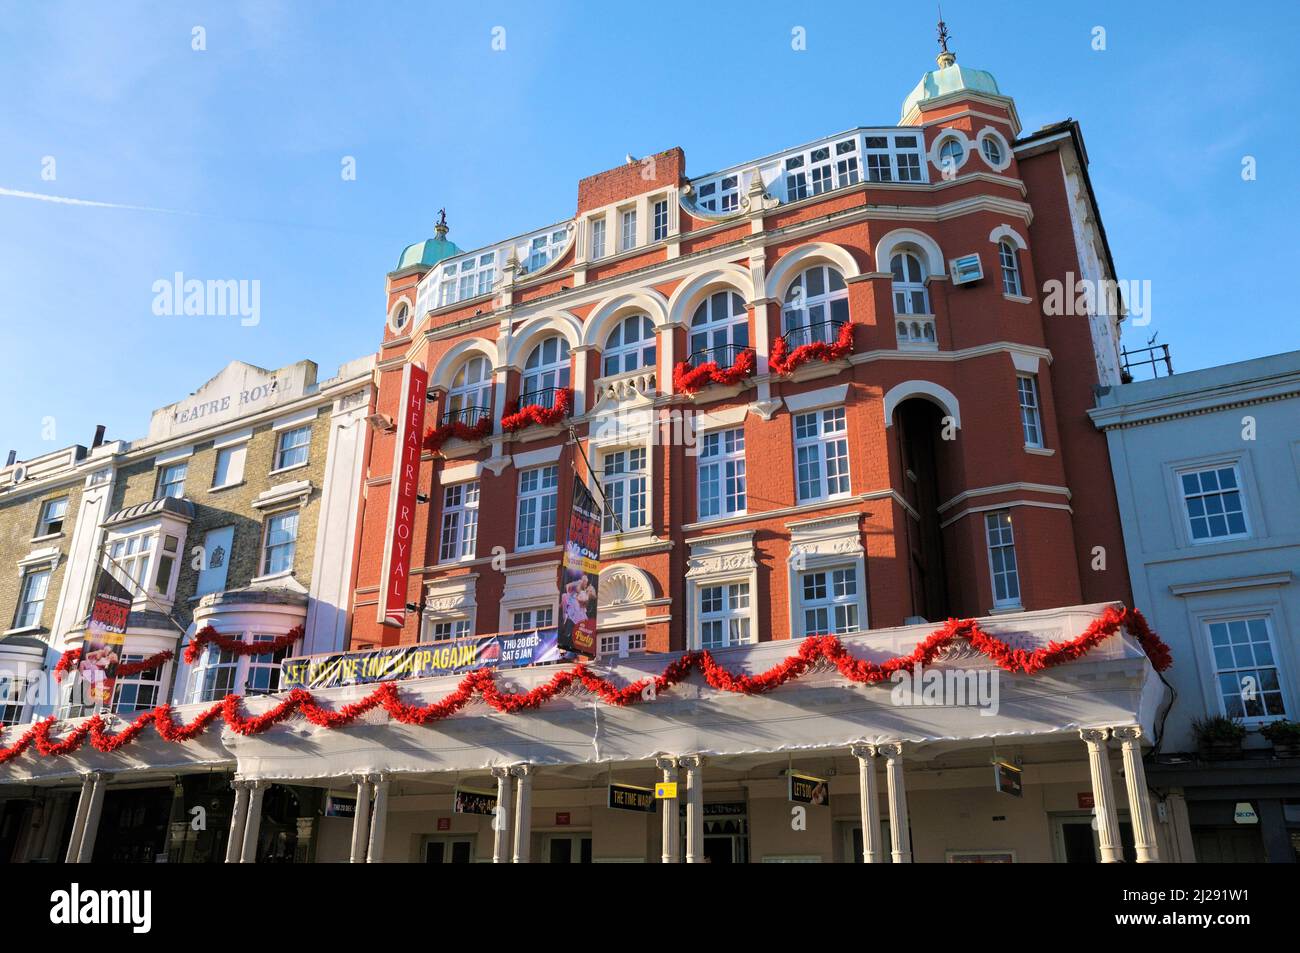 Extérieur du Théâtre Royal Brighton, l'un des plus anciens théâtres de travail du pays, Brighton, East Sussex, Angleterre, Royaume-Uni Banque D'Images